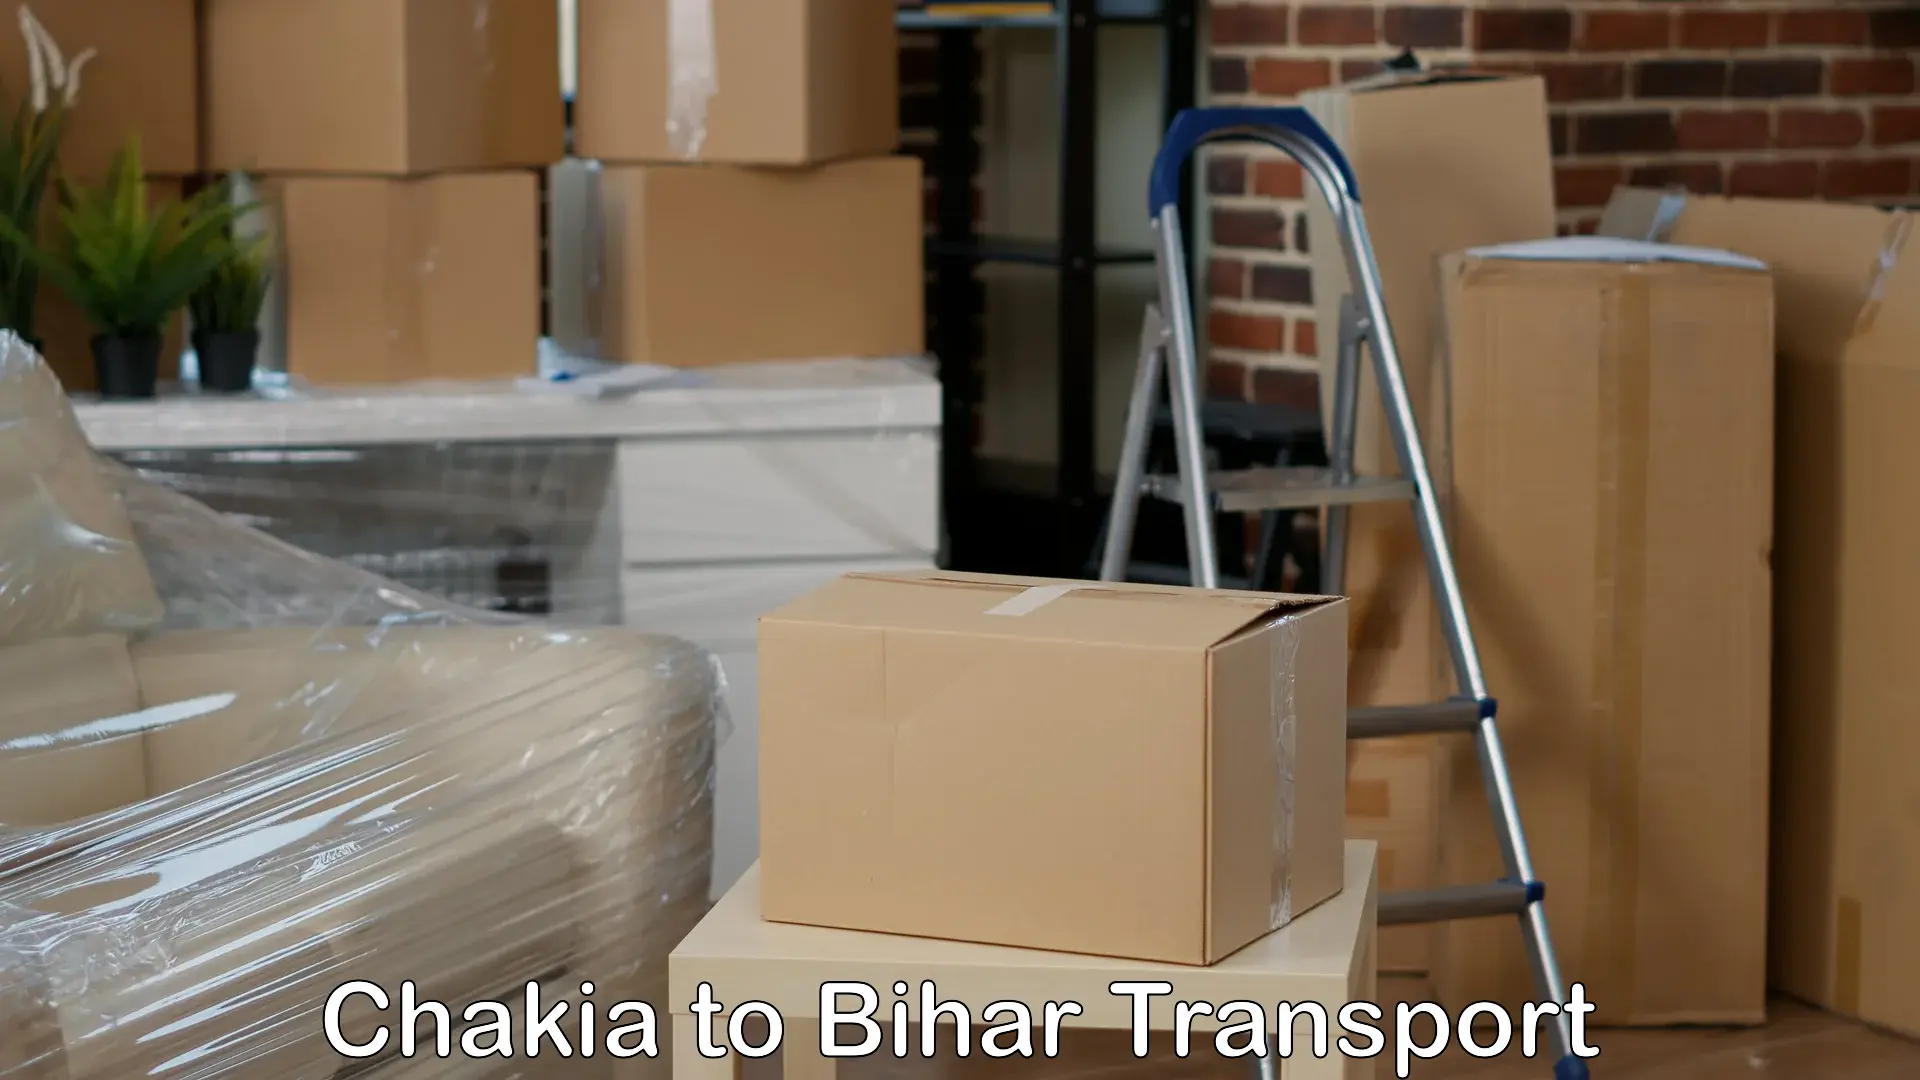 Pick up transport service Chakia to Chakai